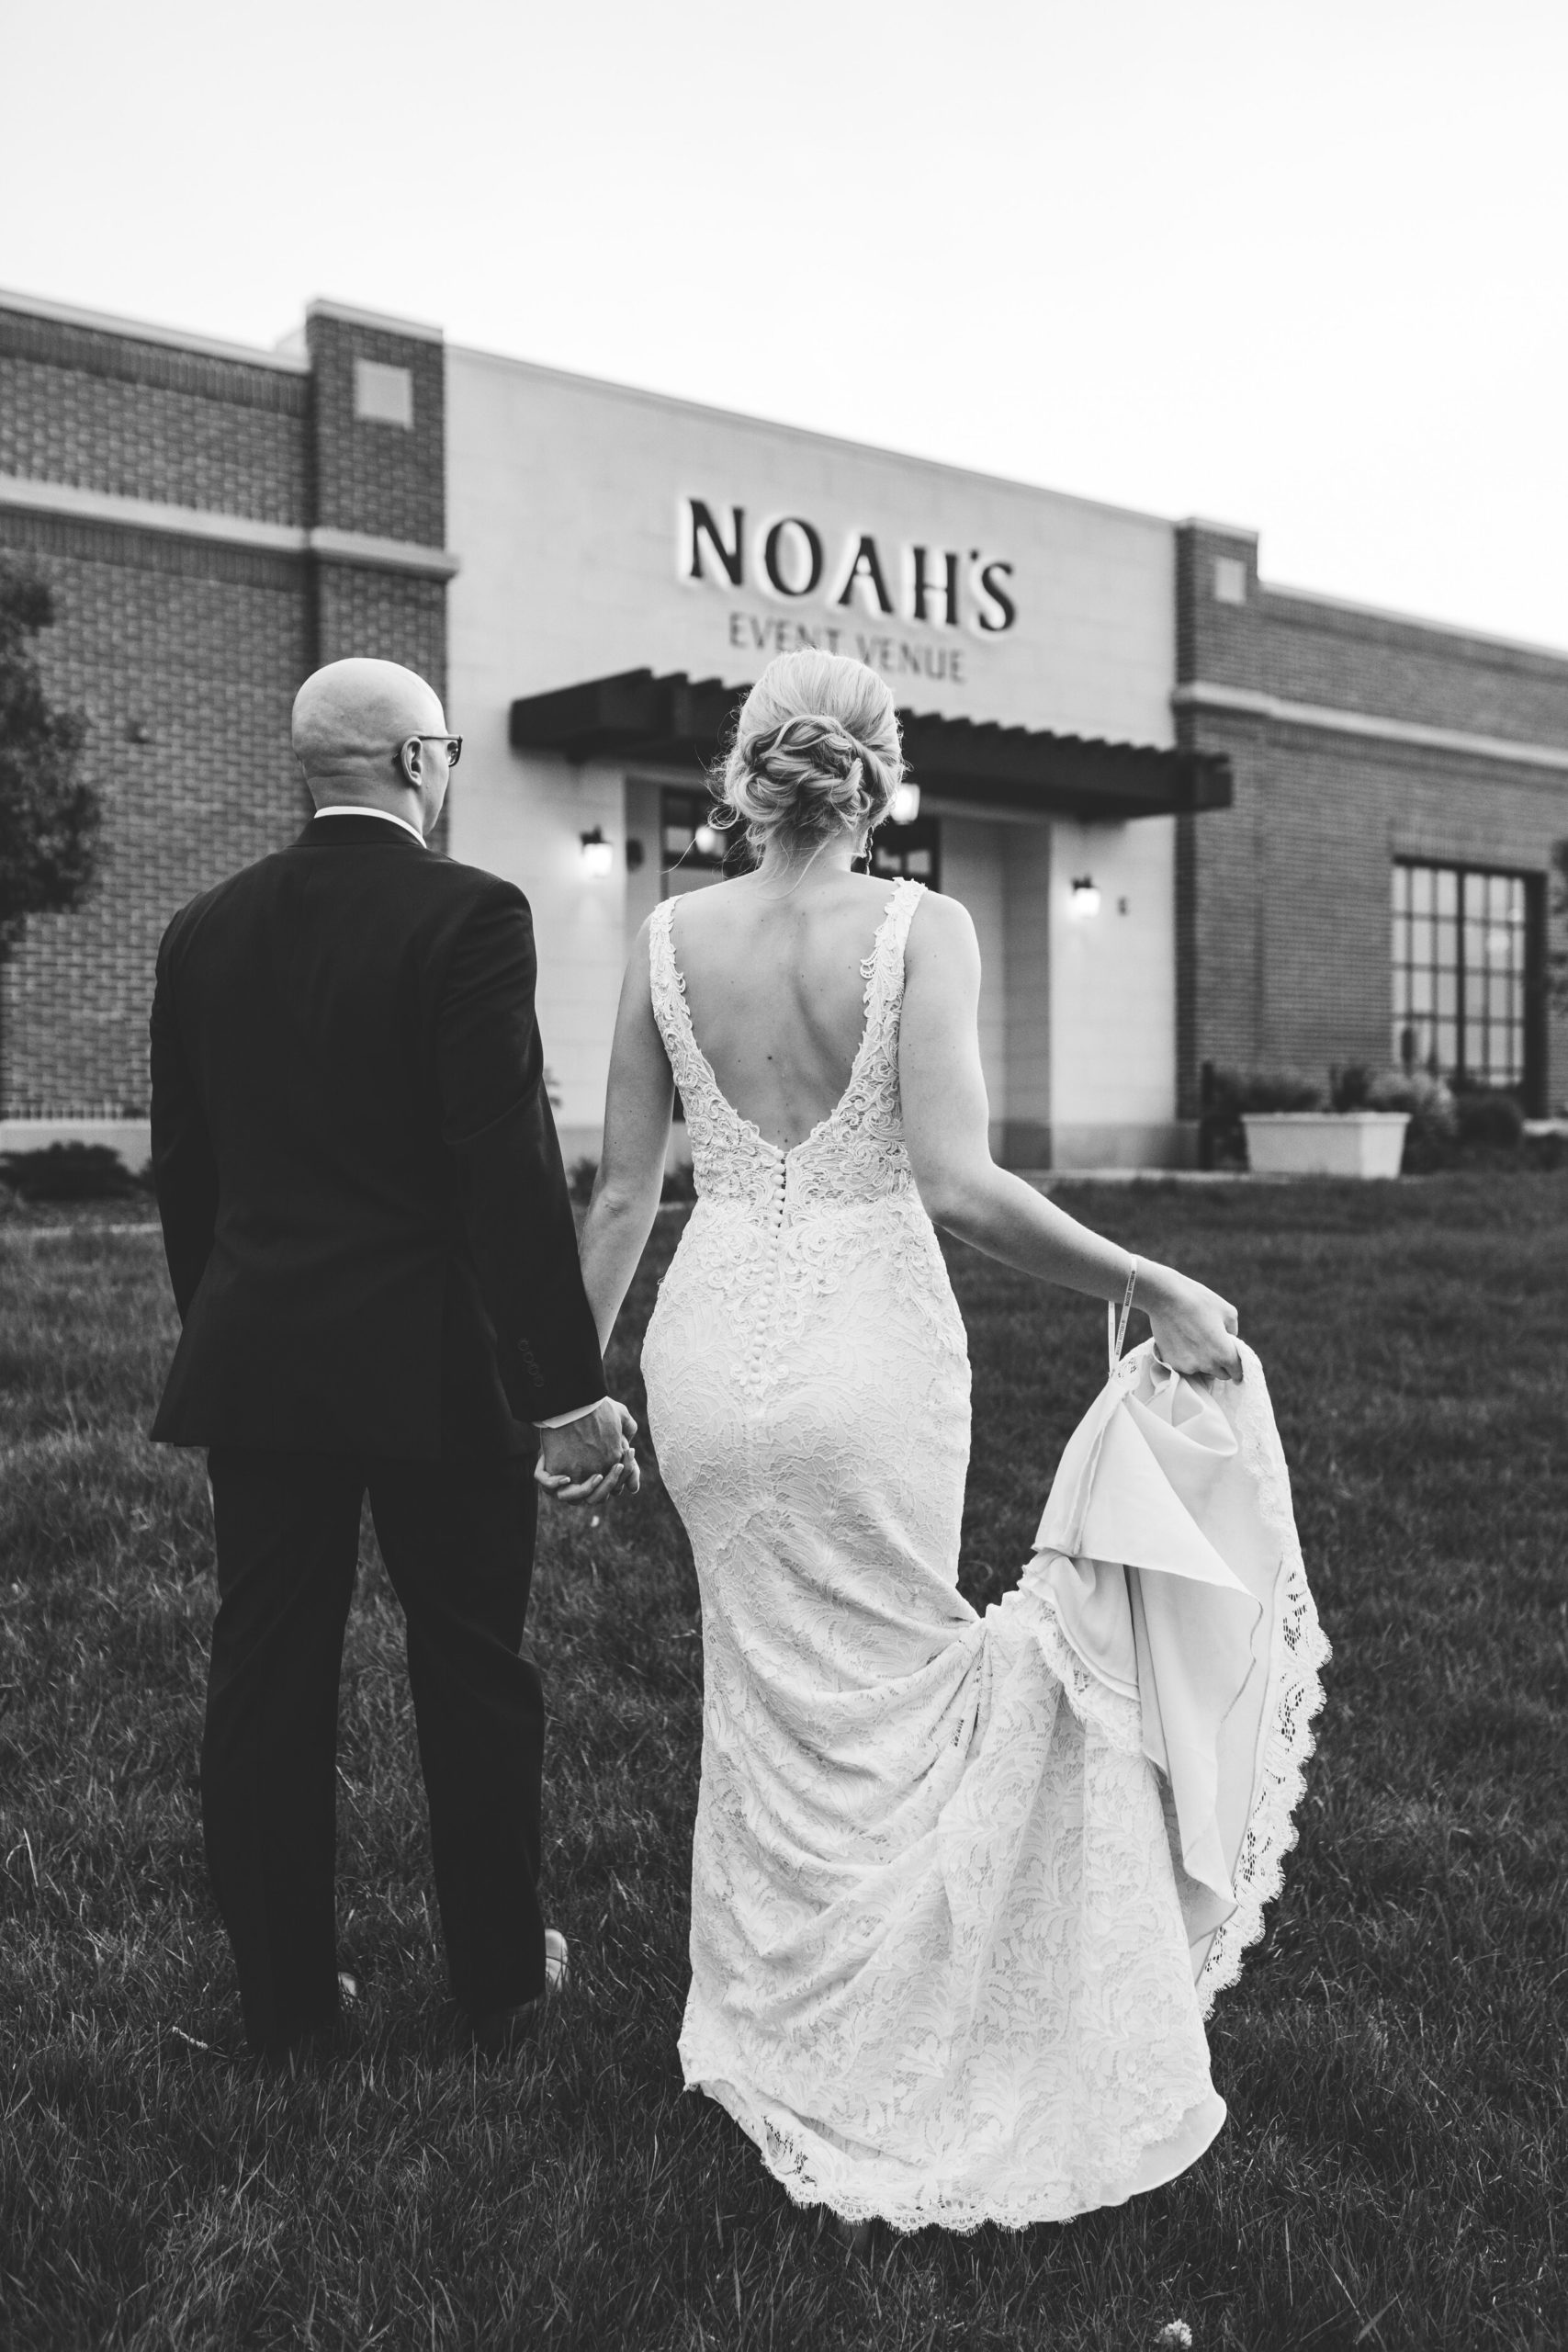 Amber + Nick - Modern Spring Wedding at Noah's Wichita, Kansas144.jpg